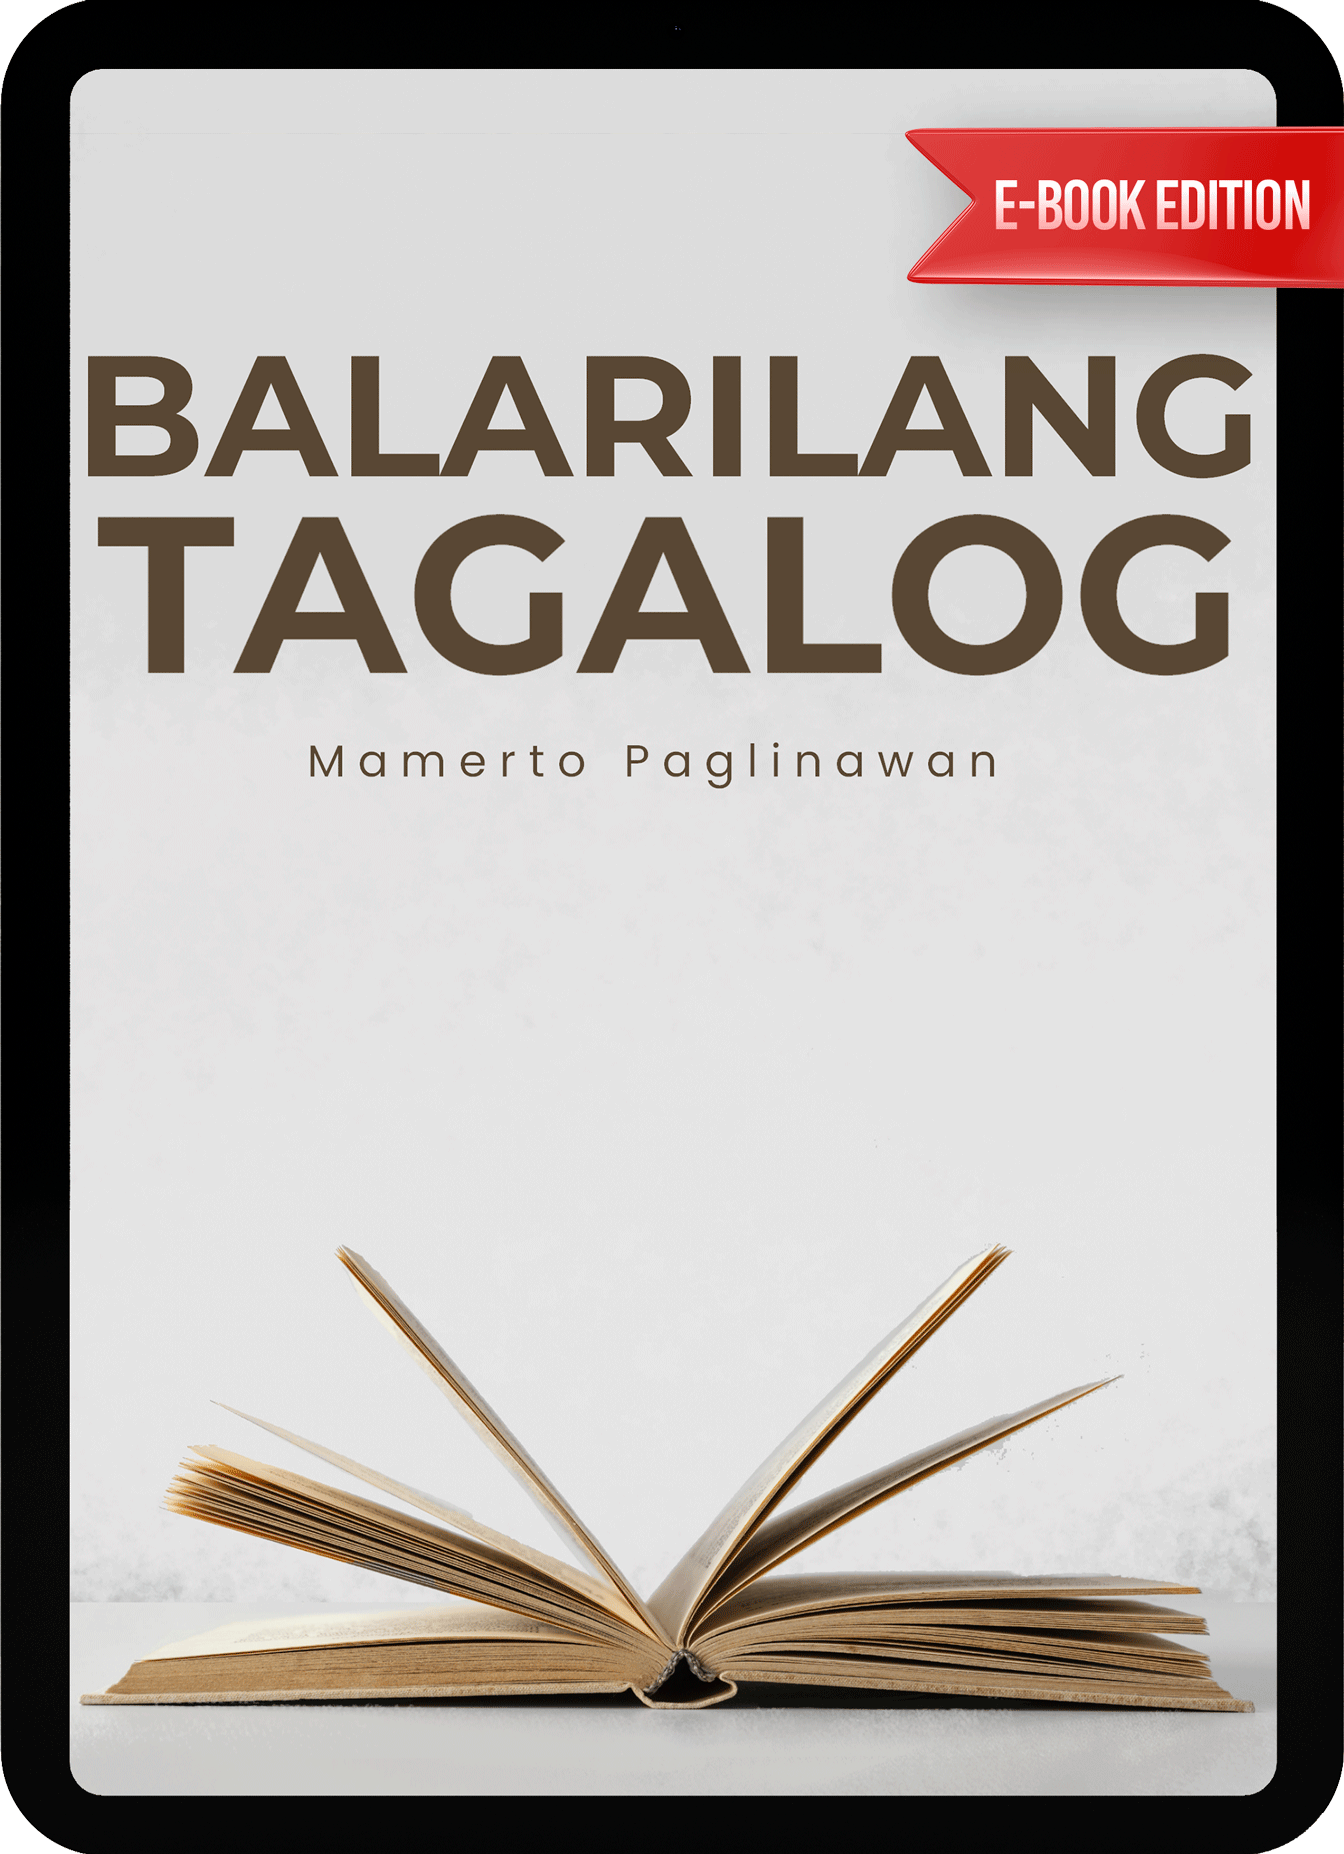 ebook - Balarilang Tagalog by Mamerto Paglinawan